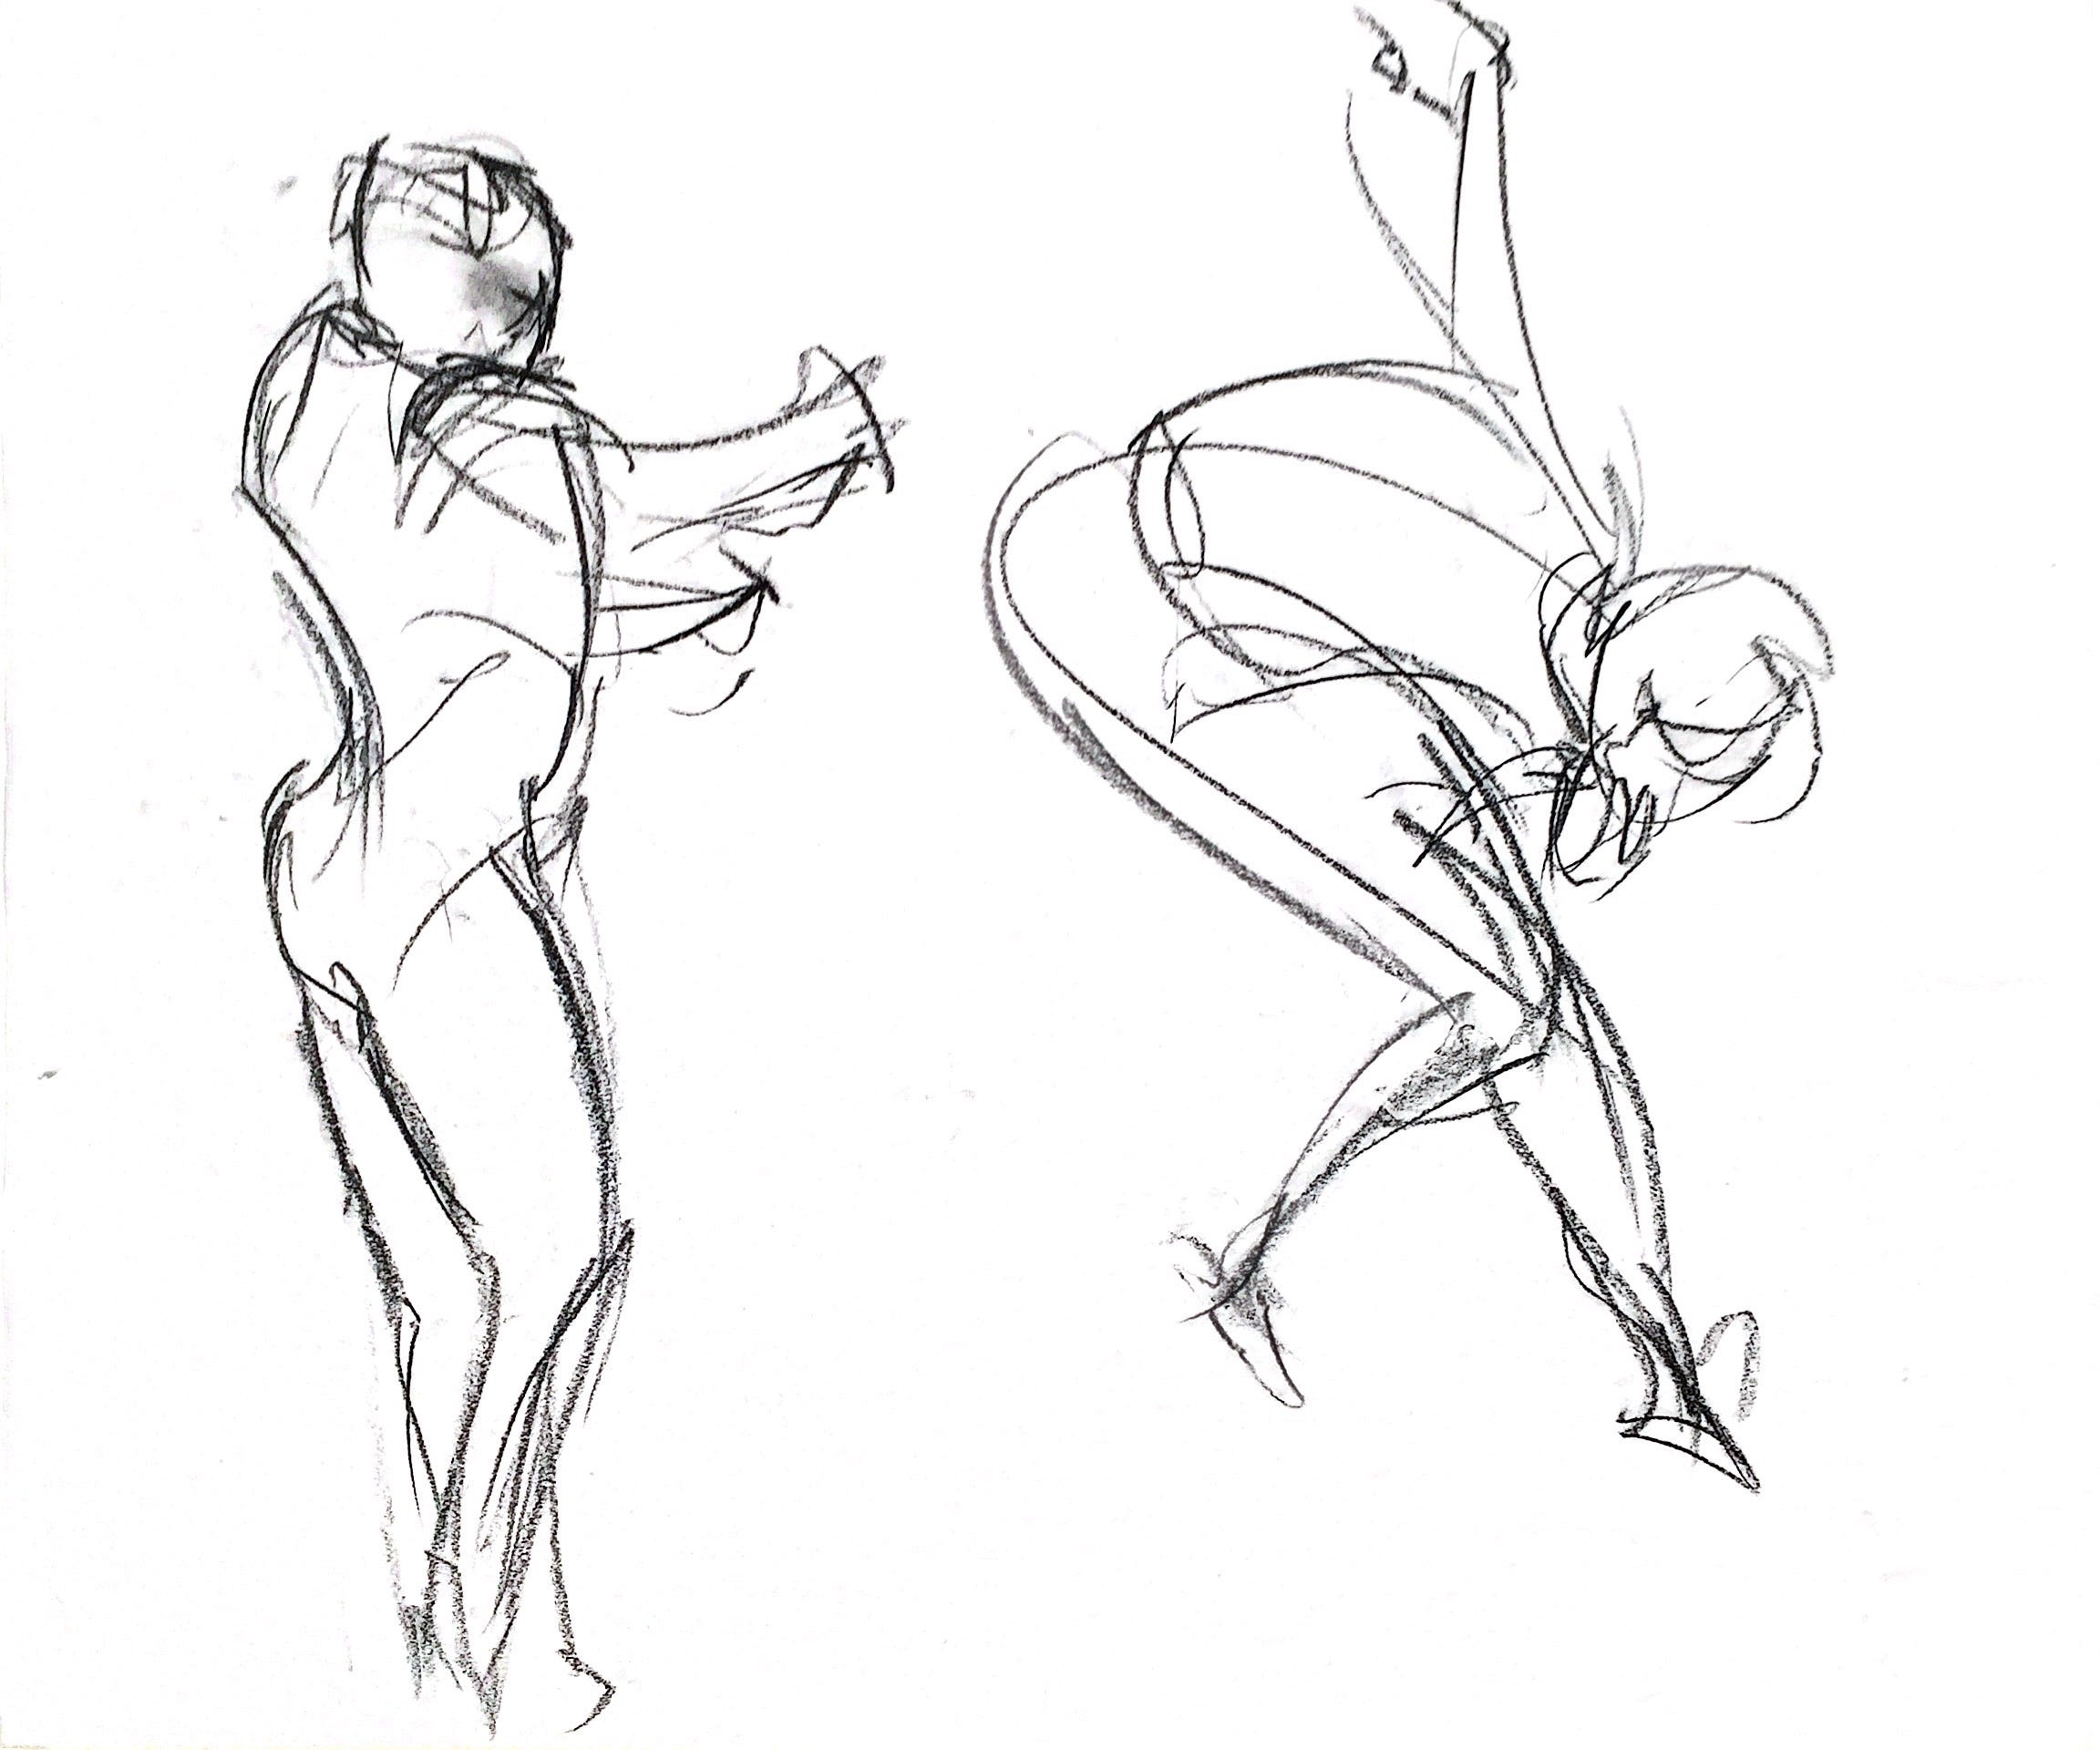 Figure Drawing. 2/20/21: Gesture drawing studies